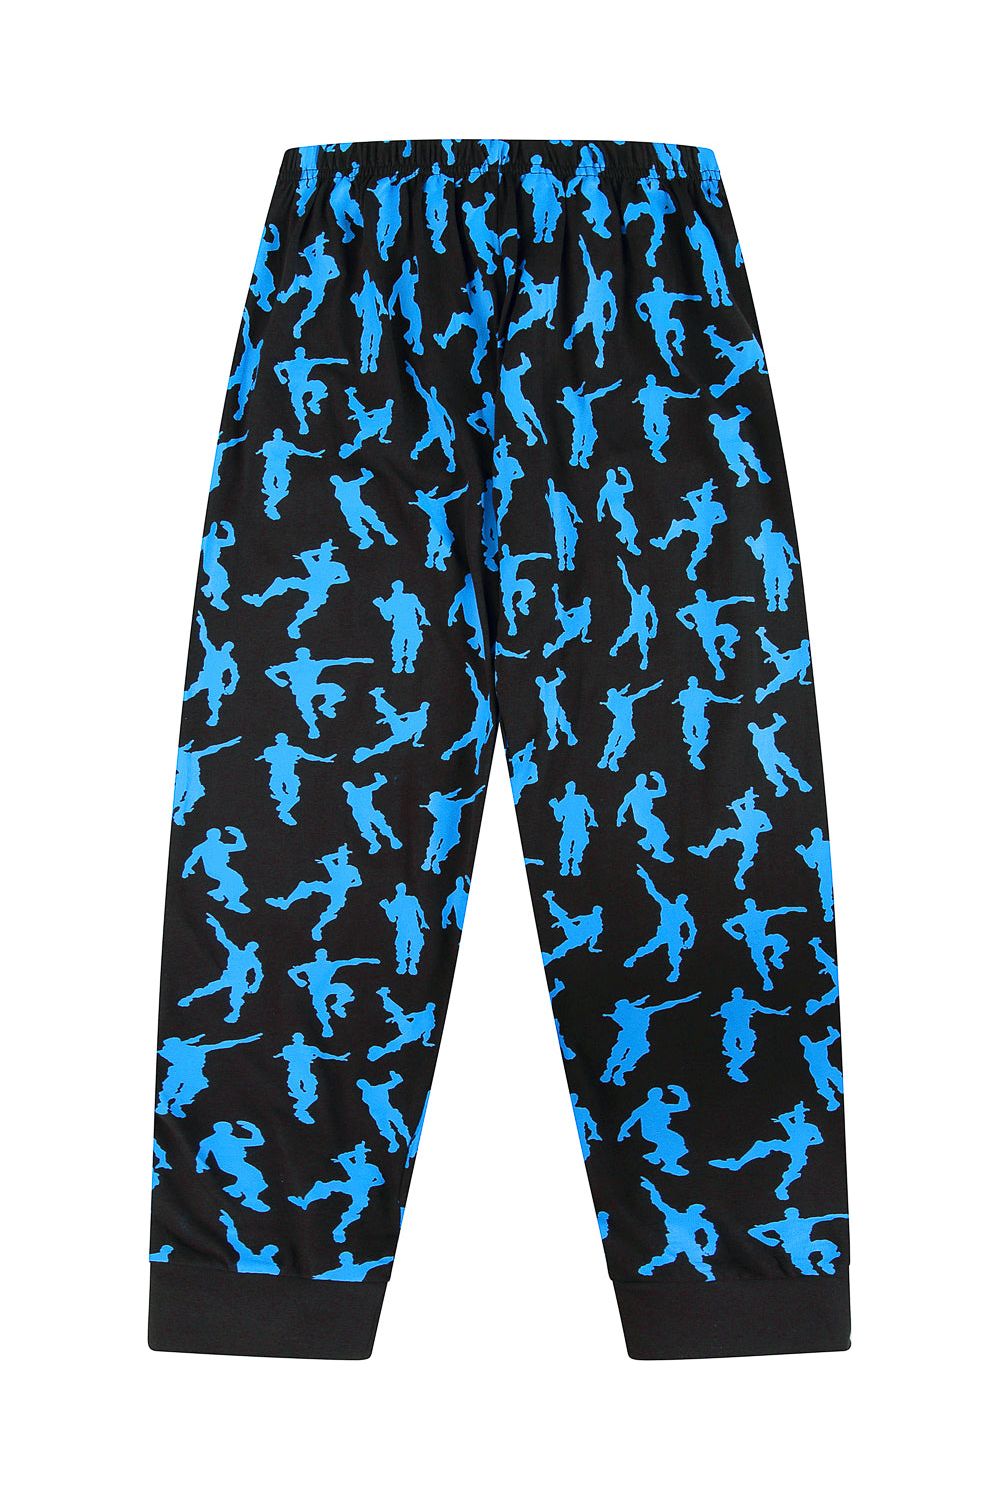 Legend Emote Dance Gaming Blue Long Pyjamas - Pyjamas.com